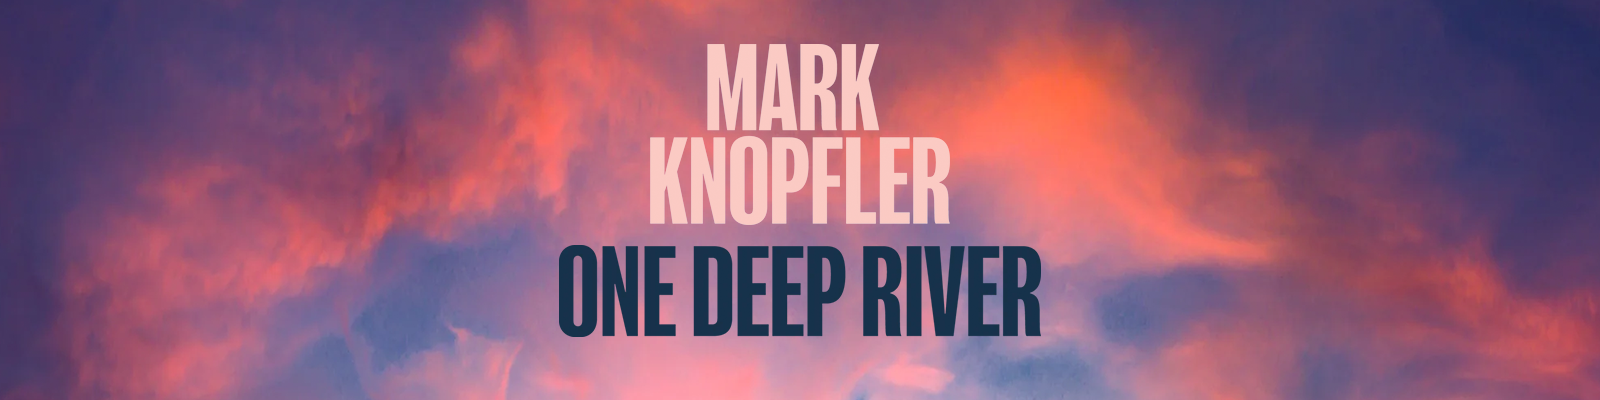 Mark Knopfler udiscover Teaser